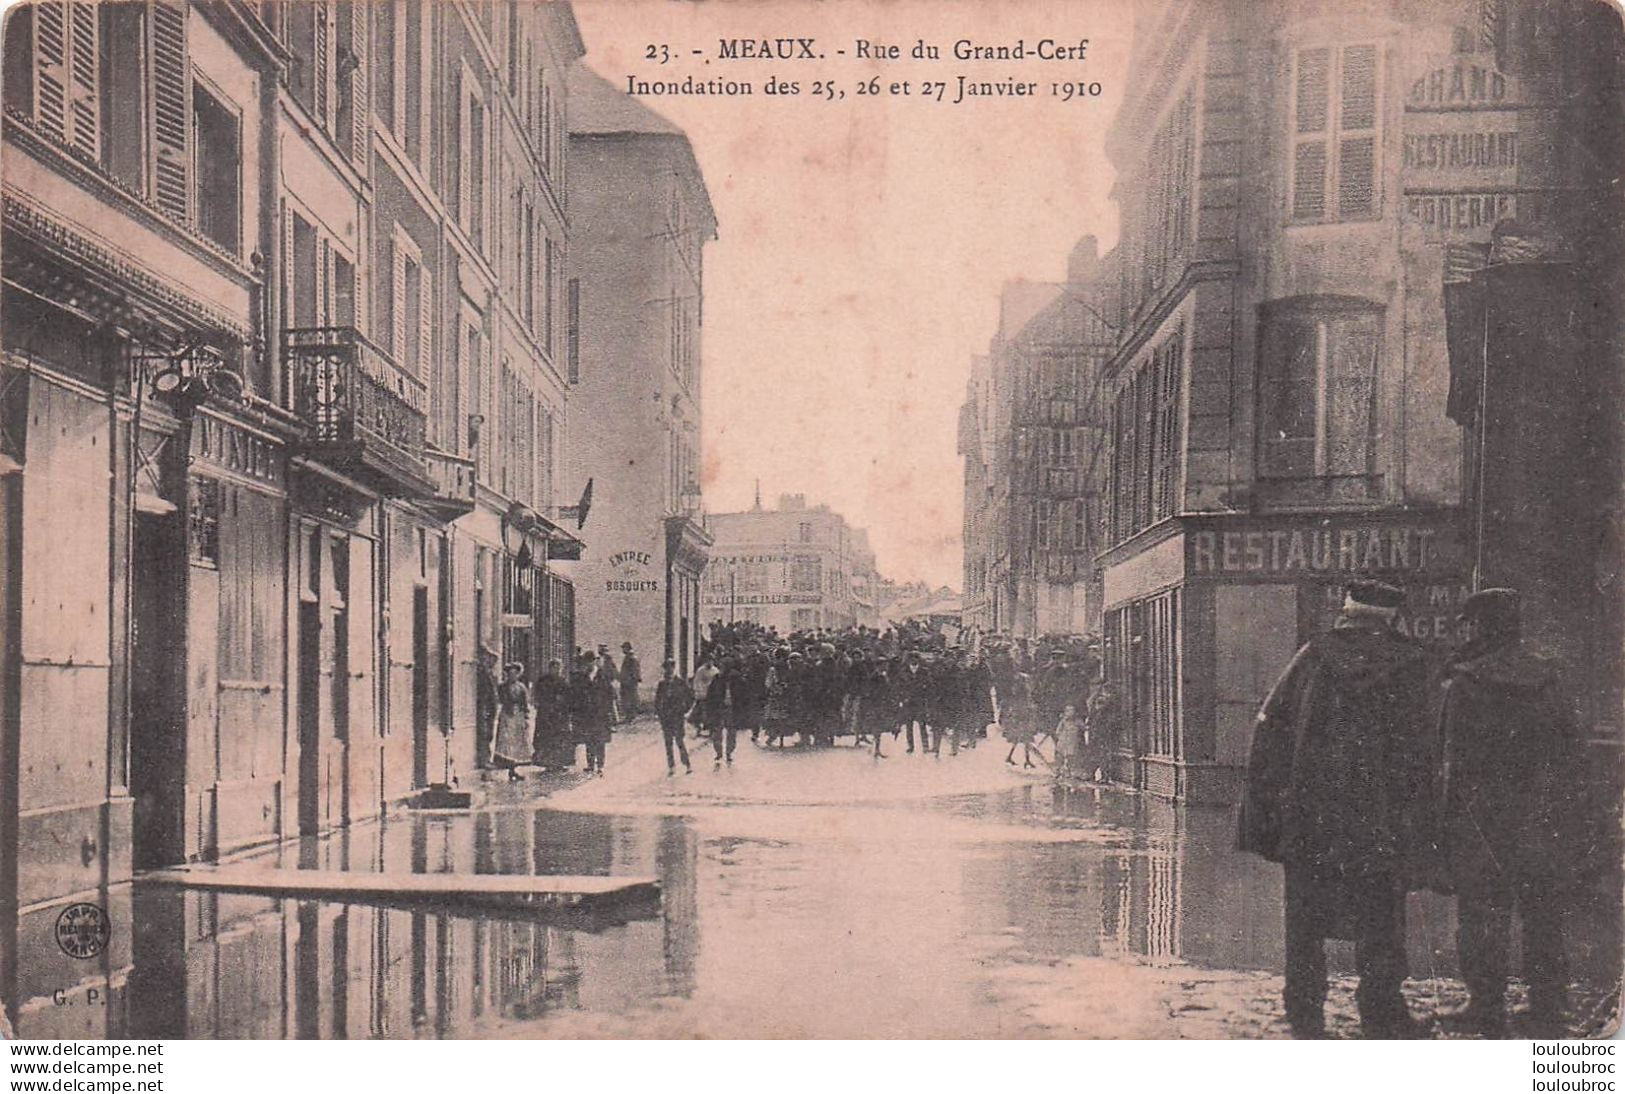 MEAUX CRUES INONDATIONS JANVIER 1910 RUE DU GRAND CERF - Meaux